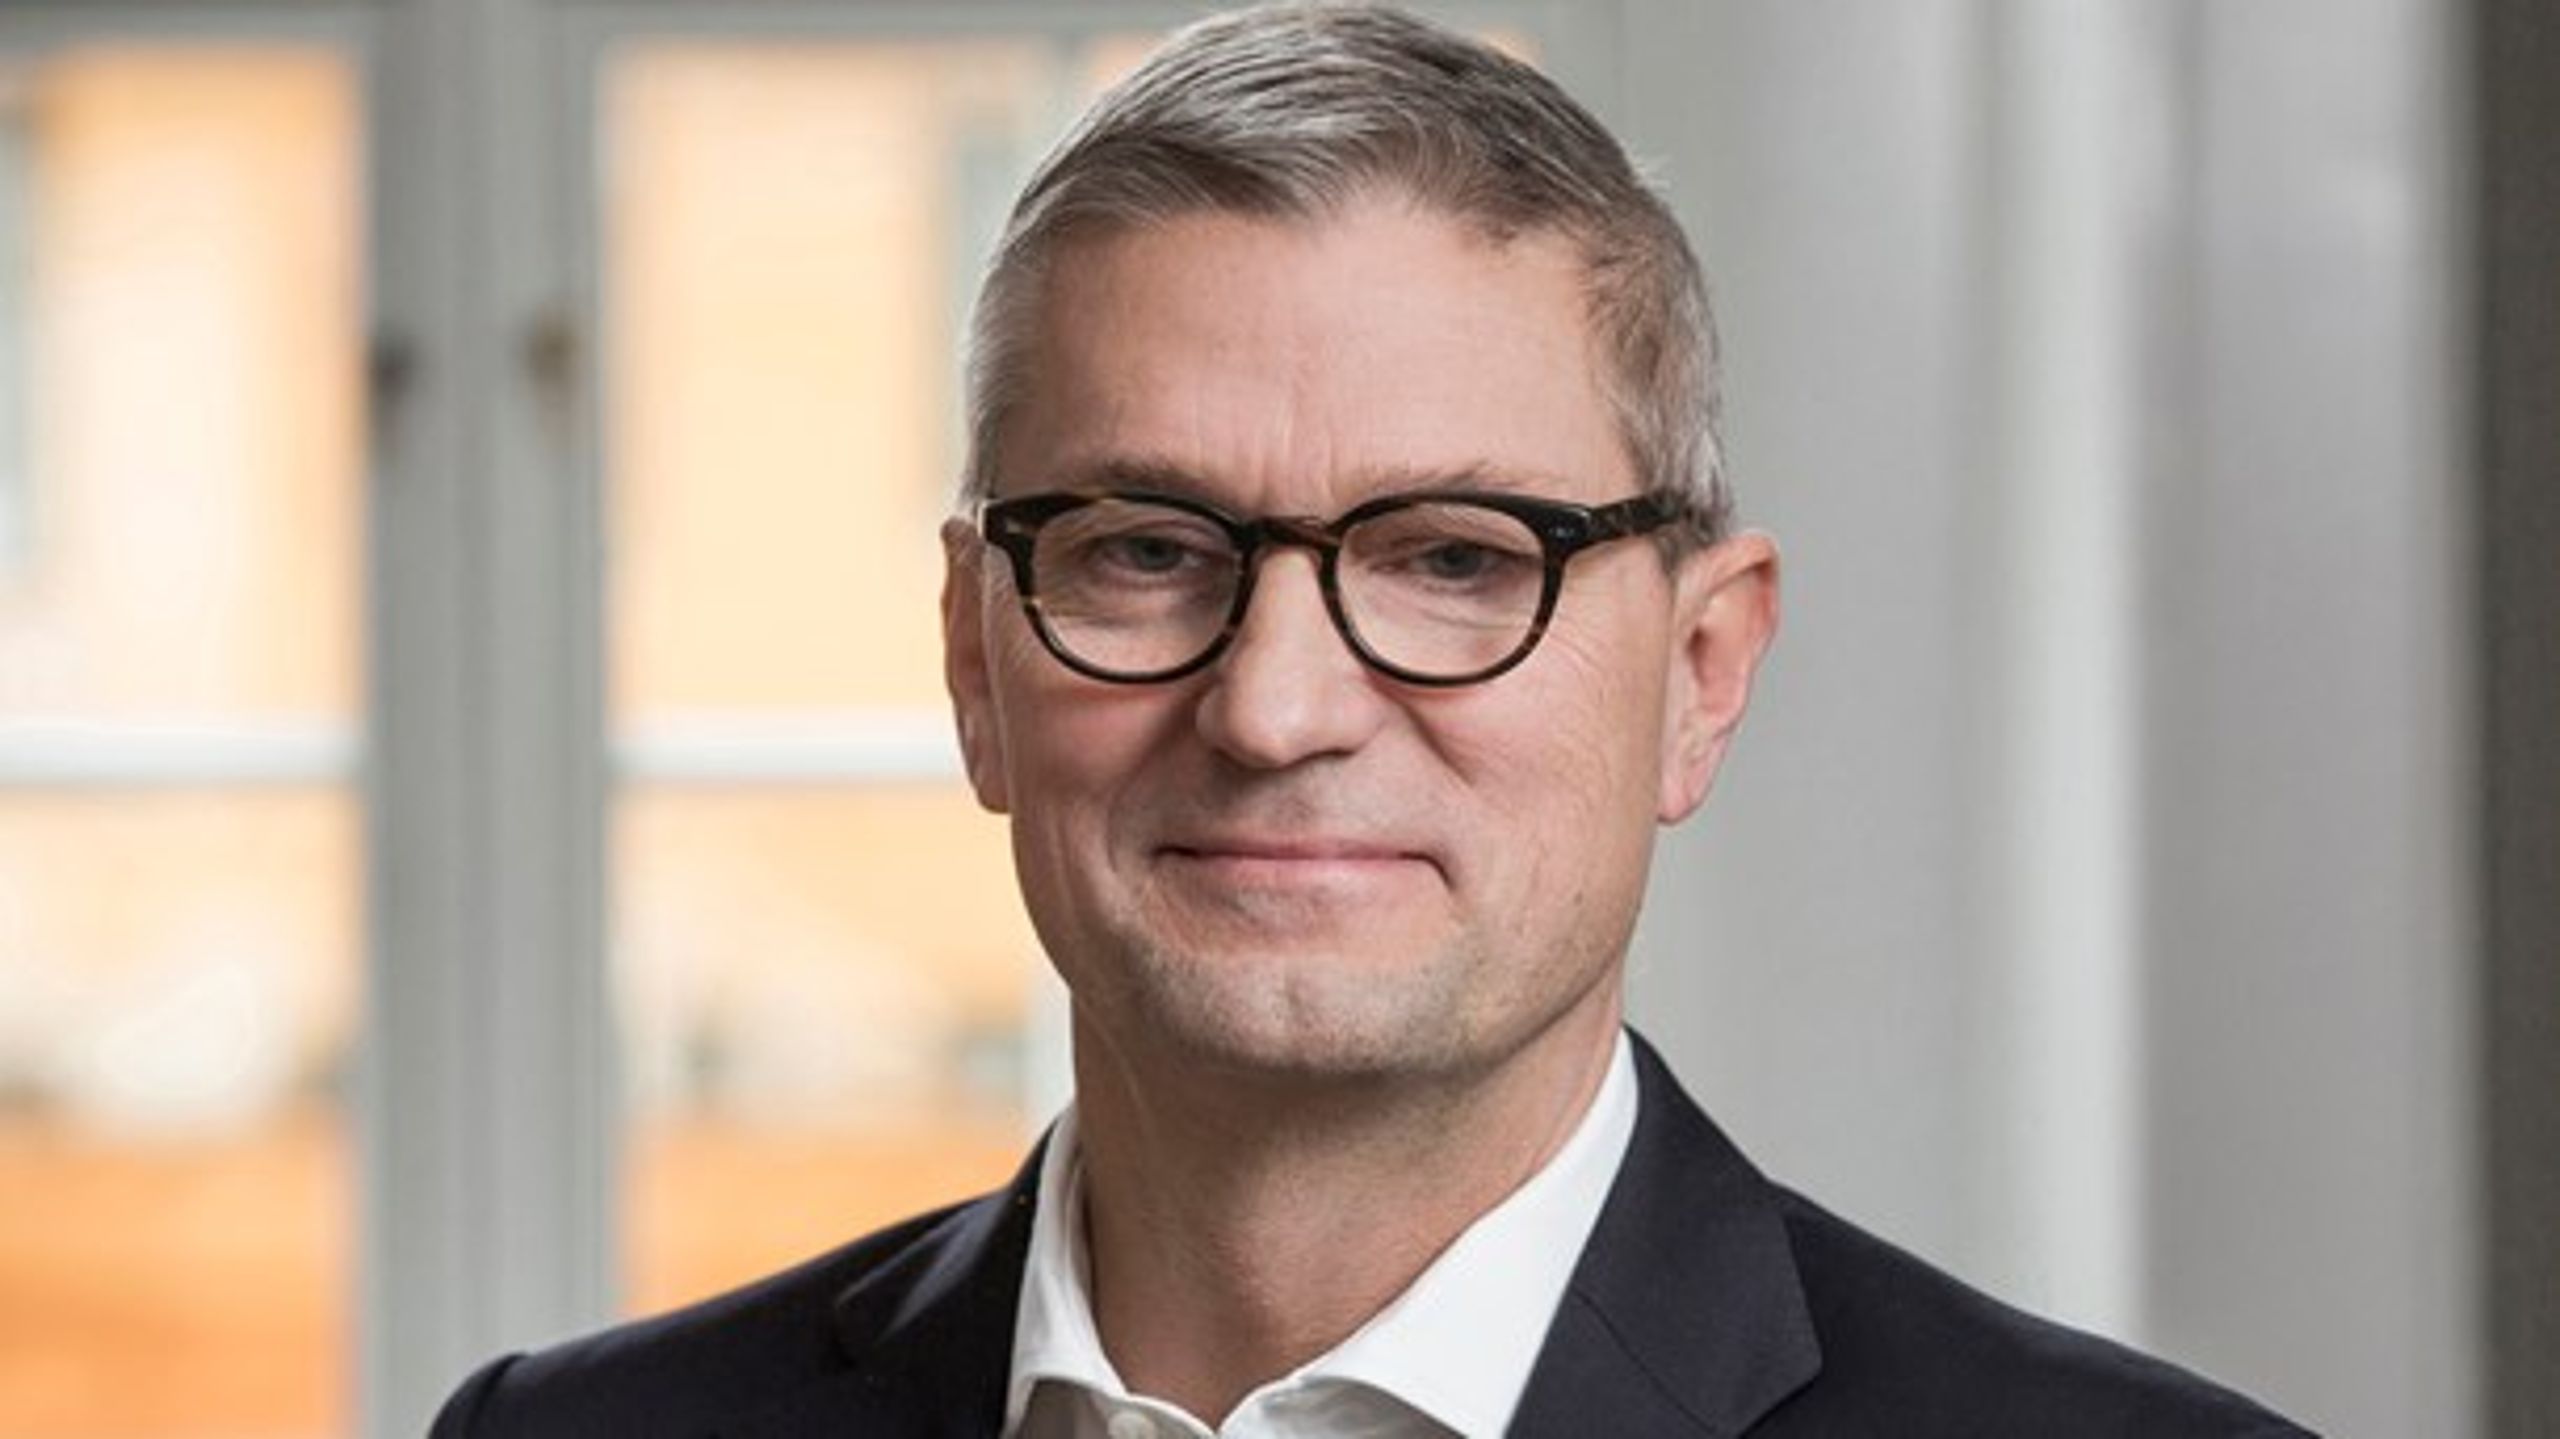 Hans Christian Schmidts støtte til nye køre- hviletidsregler må følges op med handling, skriver Erik Østergaard, administrerende direktør i DTL.&nbsp;